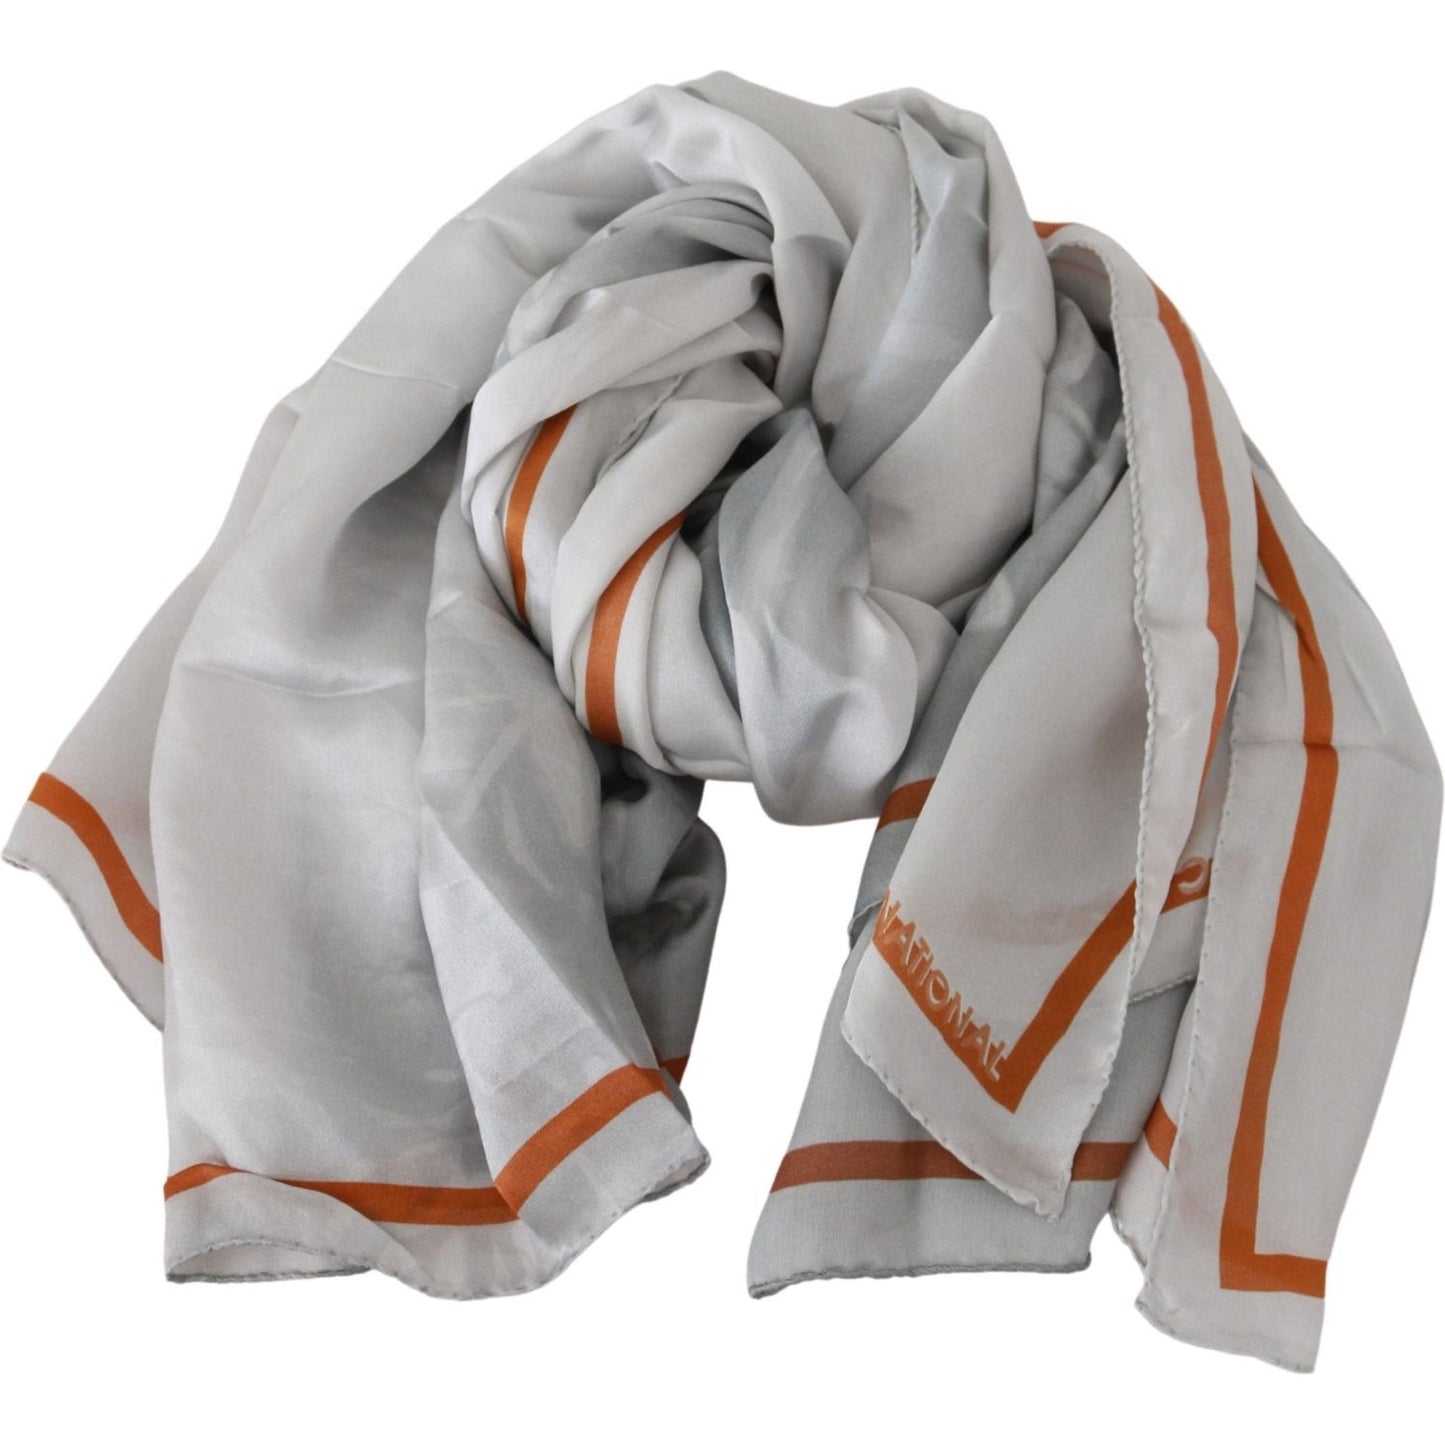 Costume National Elegant Floral Printed Silk Scarf gray-orange-silk-floral-foulard-wrap-scarf Silk Wrap Shawls IMG_0297-e8584927-bac.jpg